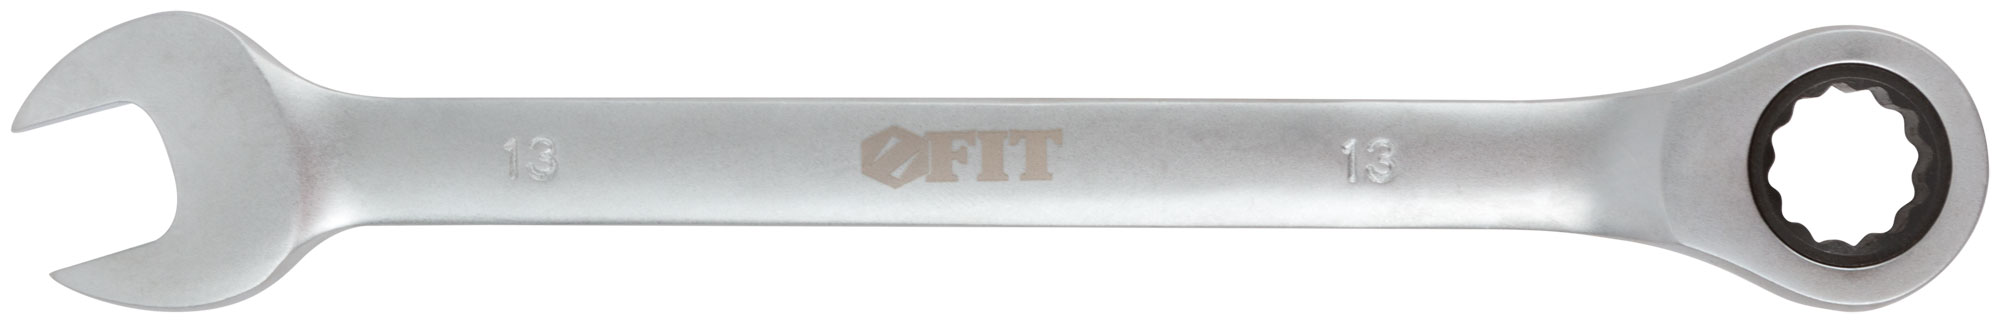 Ключ комбинированный трещоточный, 13 мм. FIT 63463 комбинированный реверсивный трещоточный ключ hortz